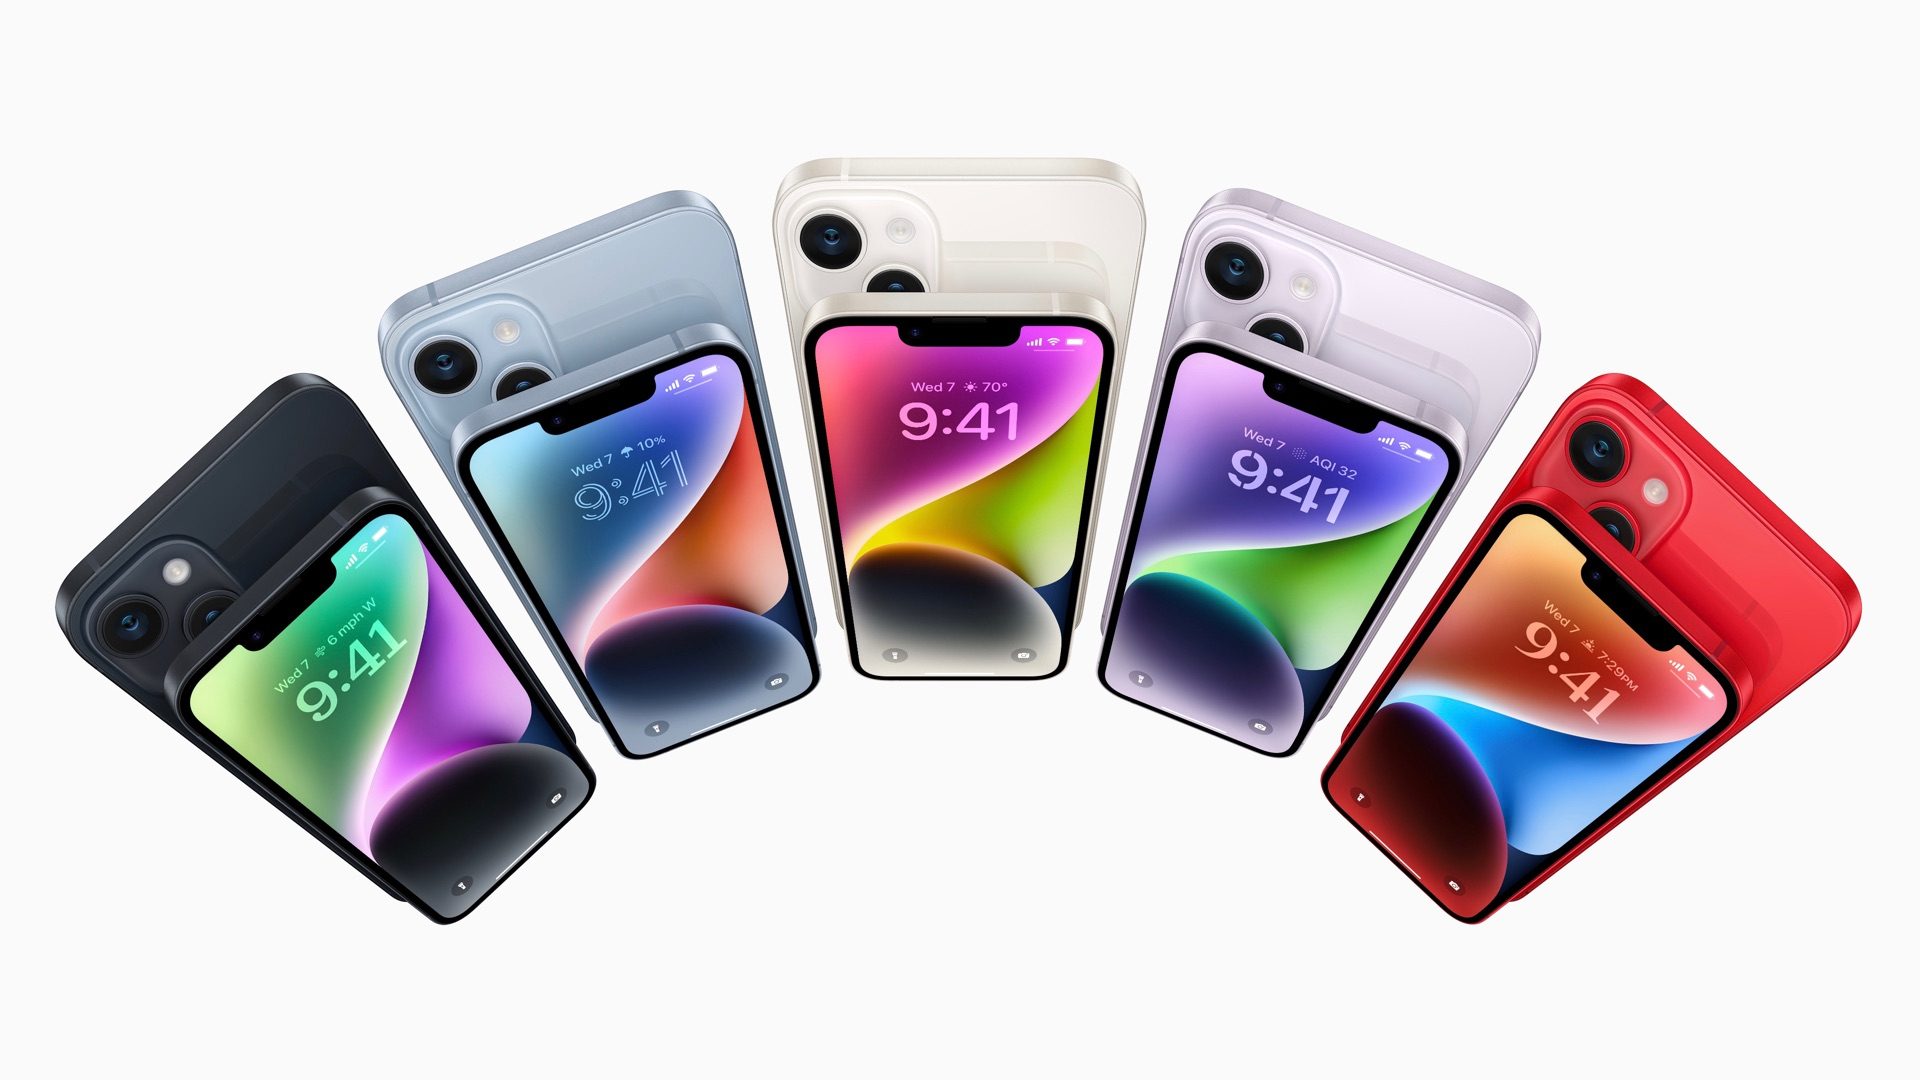 twee weken kaping Raar Welke iPhone kleur kies jij: Spacezwart, paars, blauw?